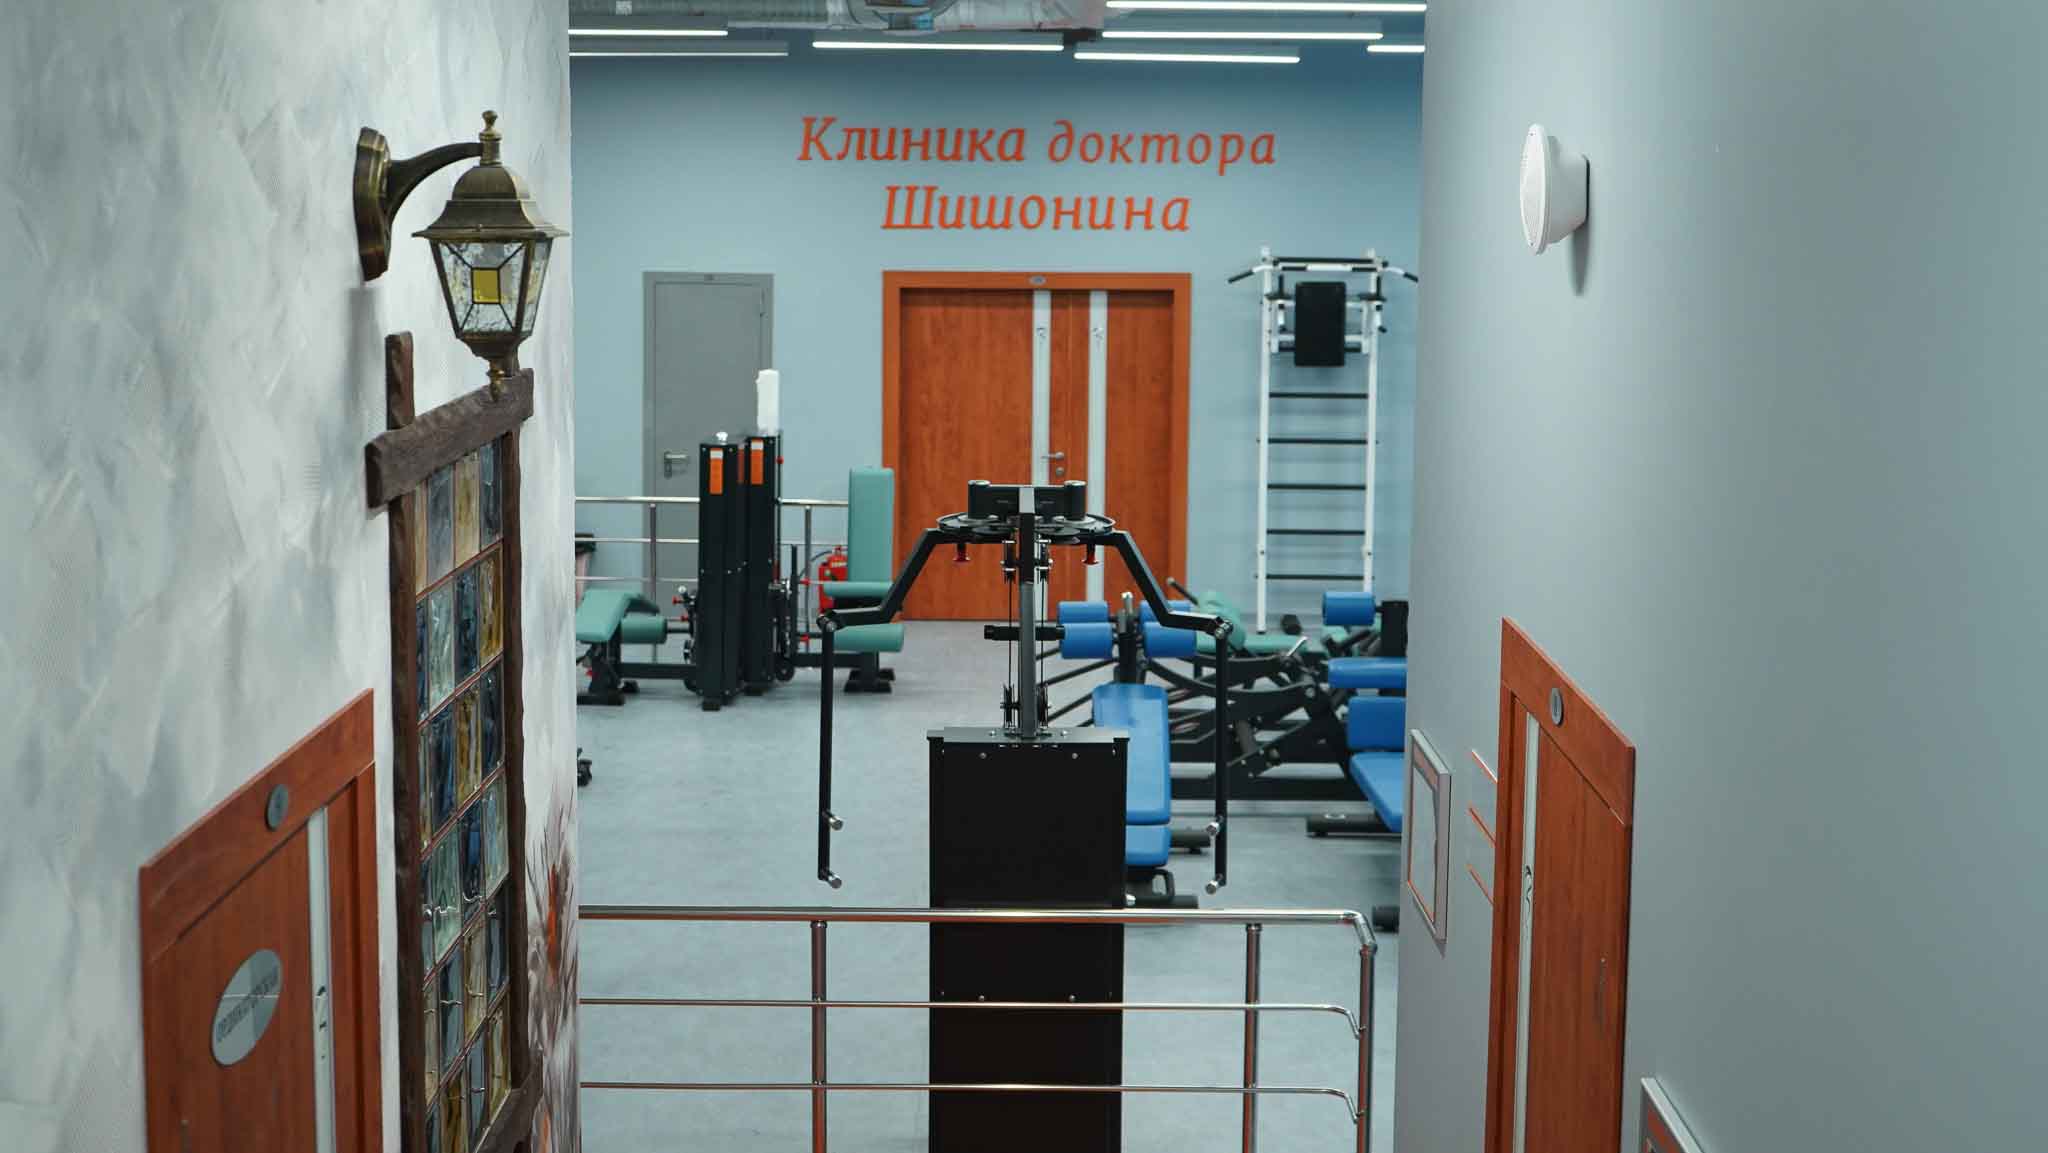 Тренажерный зал клиники доктора Шишонина